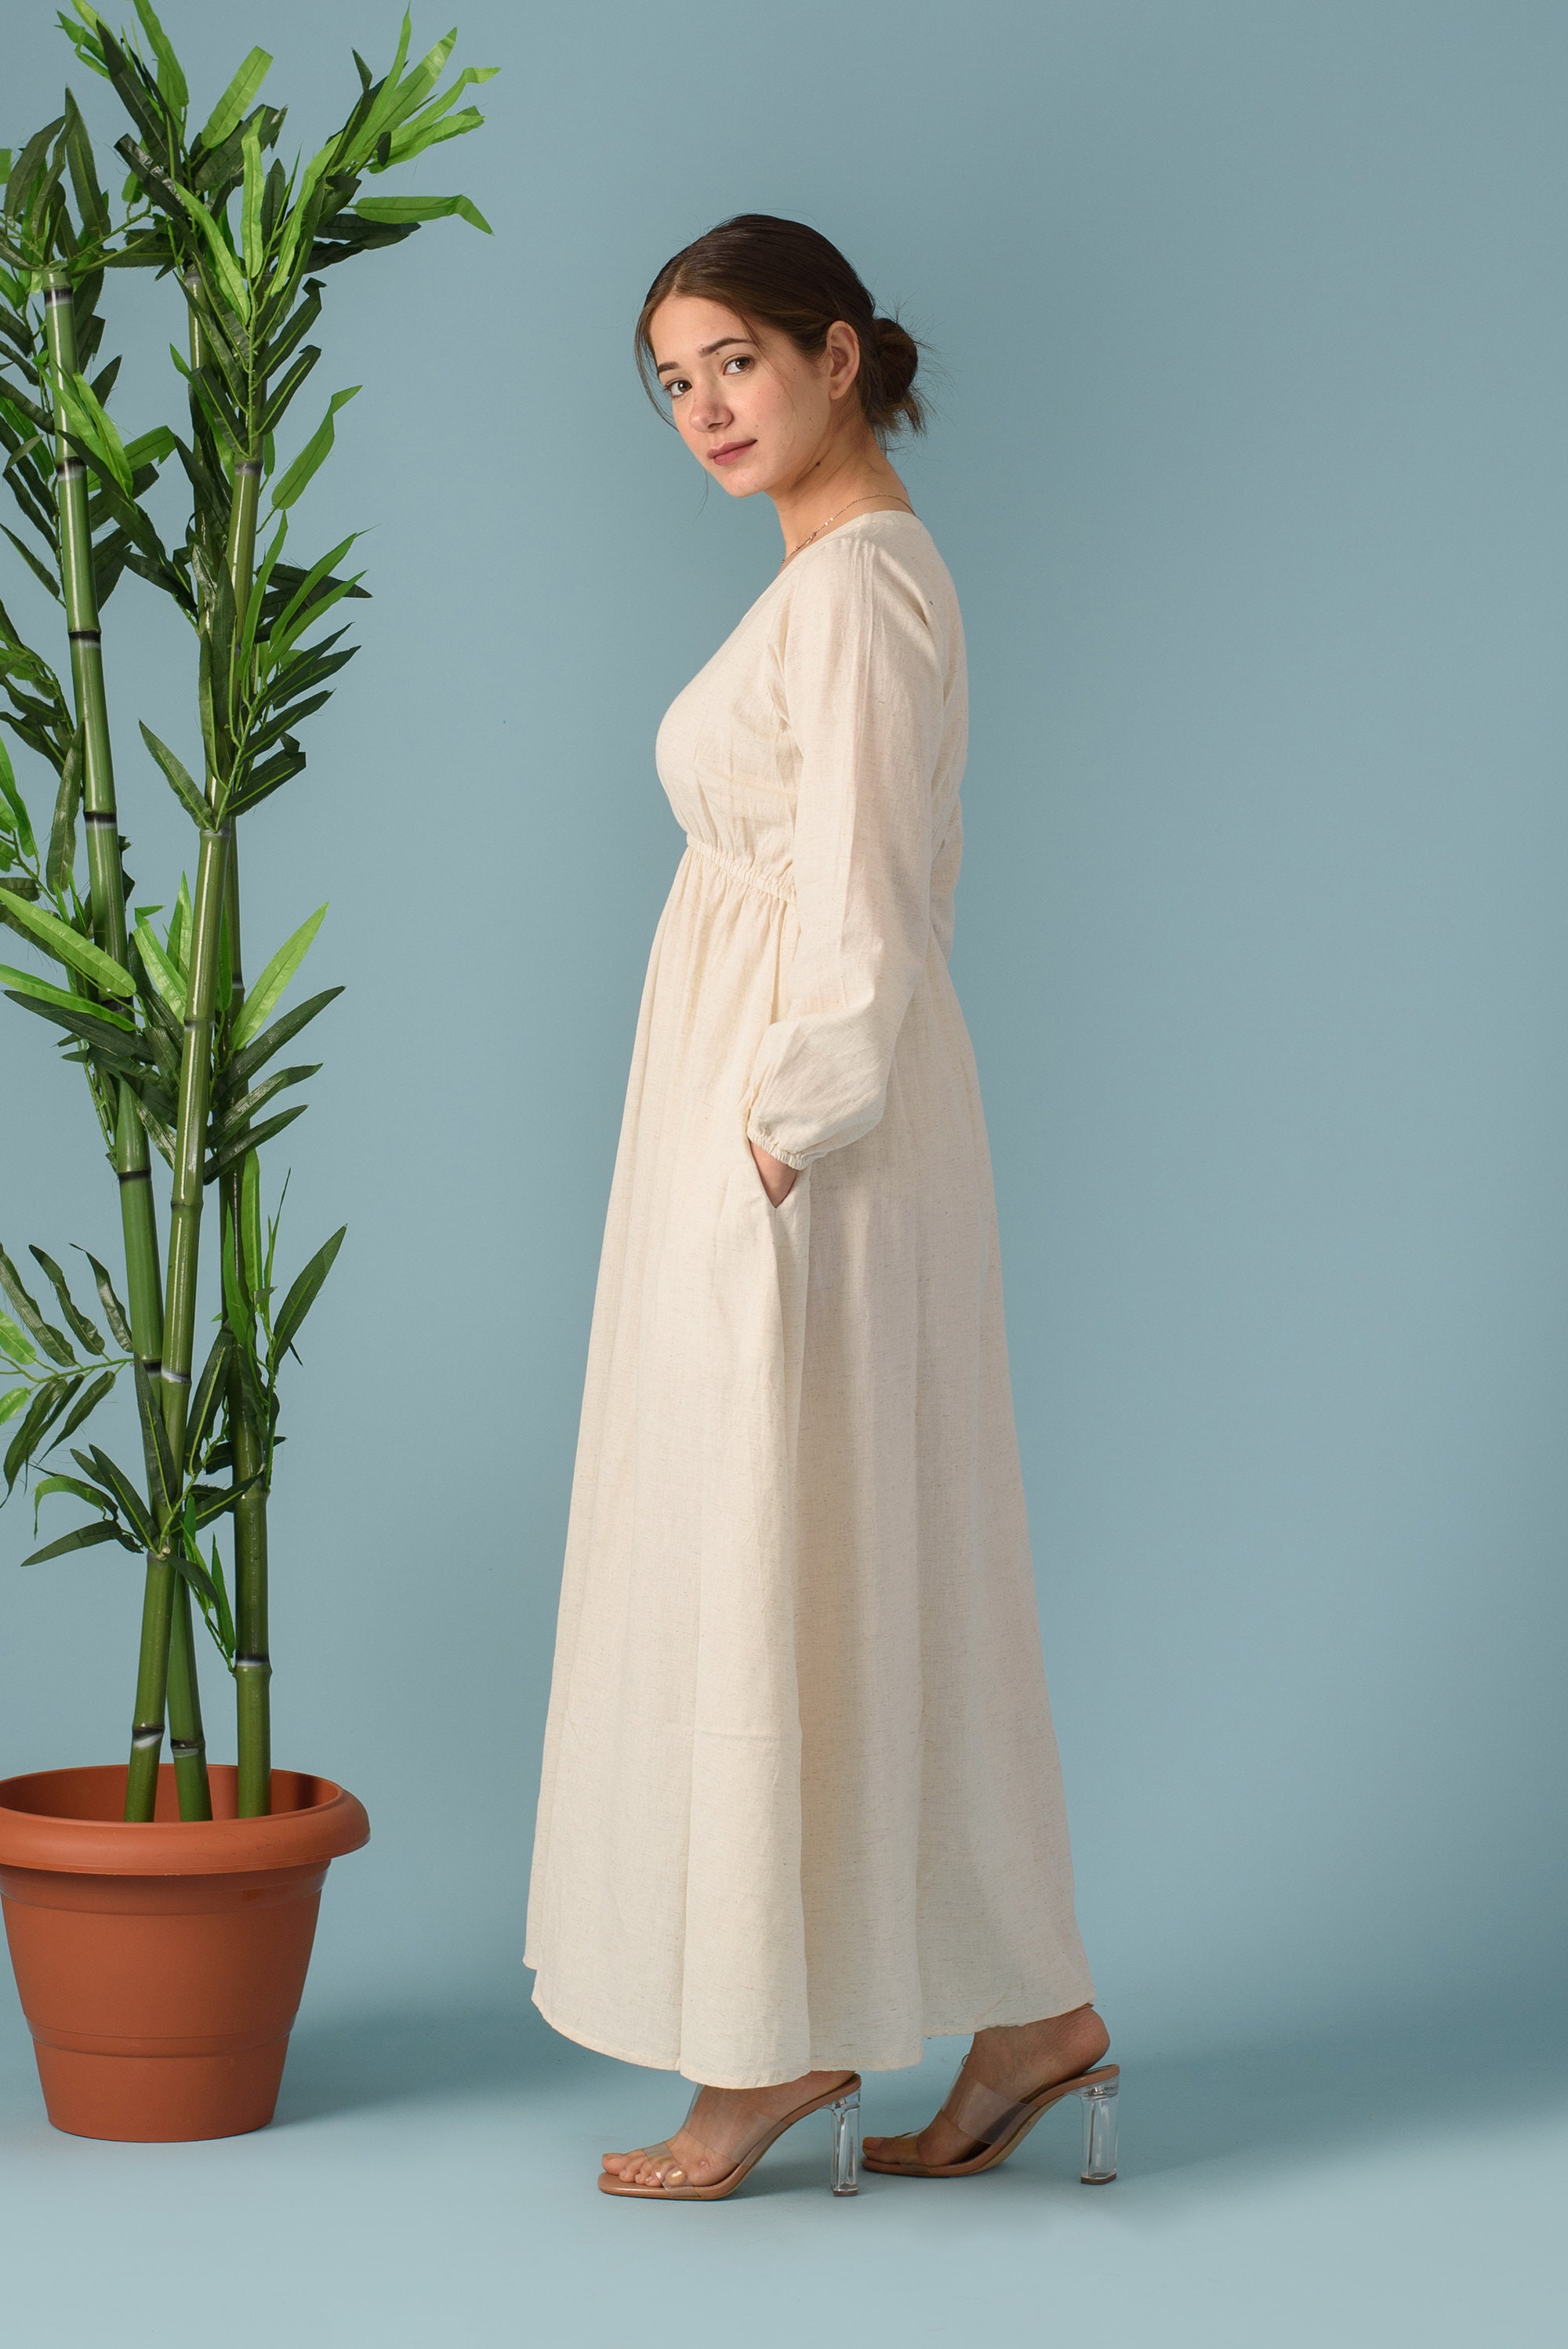 Maxi Linen Dress Empire Waist Dress Elegant Linen Dress